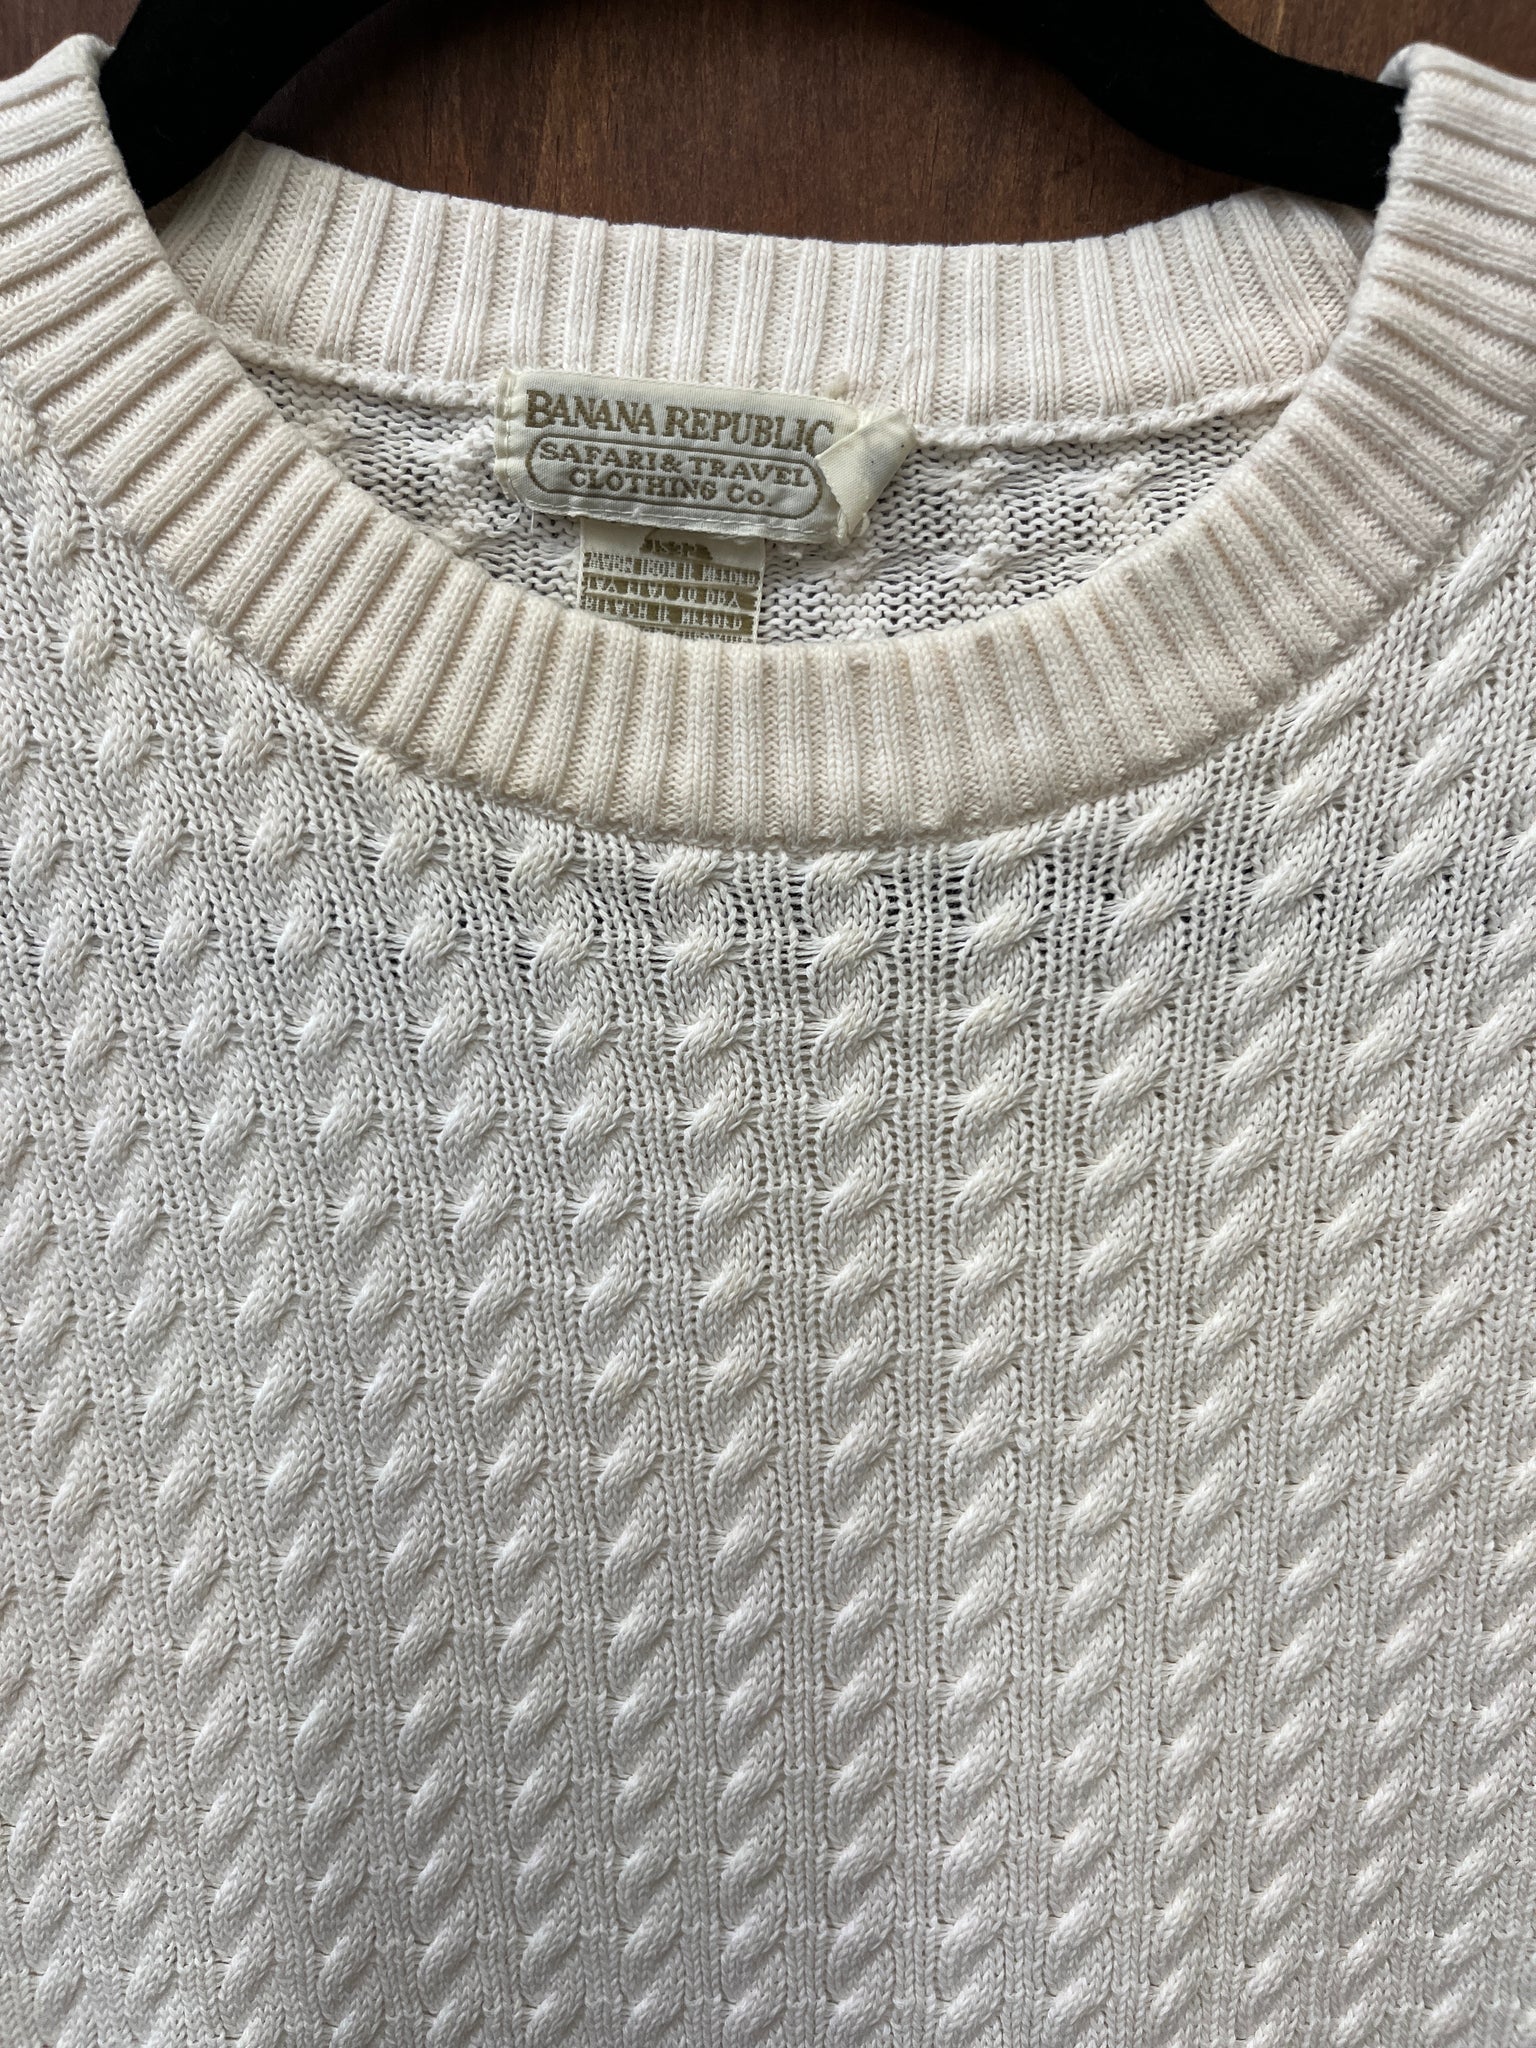 1990s SWEATER- Banana Republic cream cotton knit